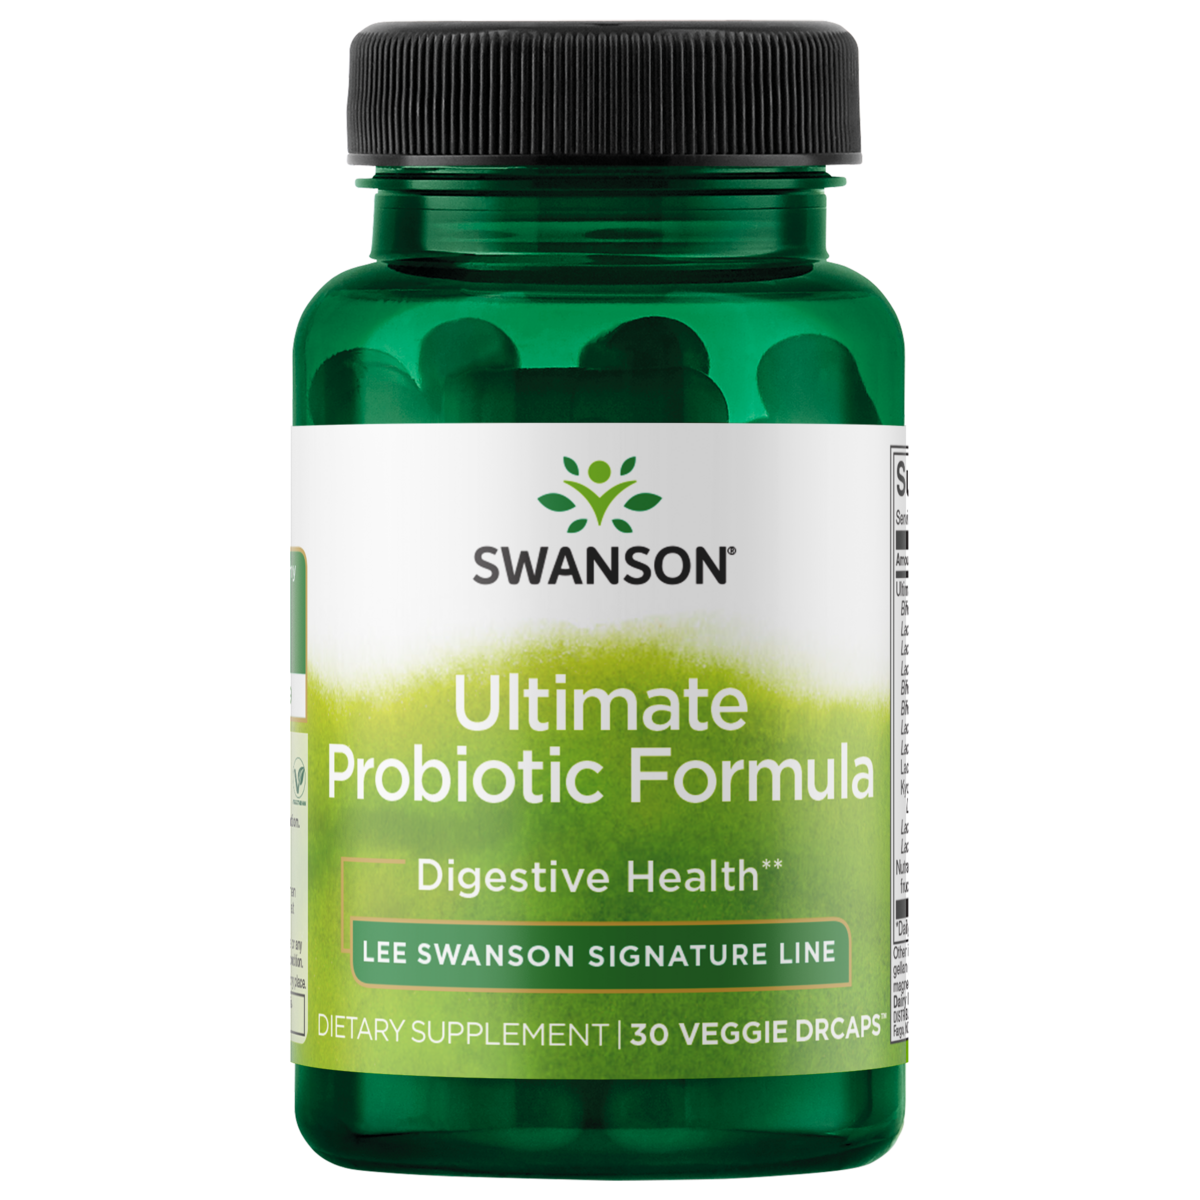 Растительные капсулы Swanson Ultimate Probiotic Formula, 66,5 млрд КОЕ, 30... Lee Swanson Signature Line